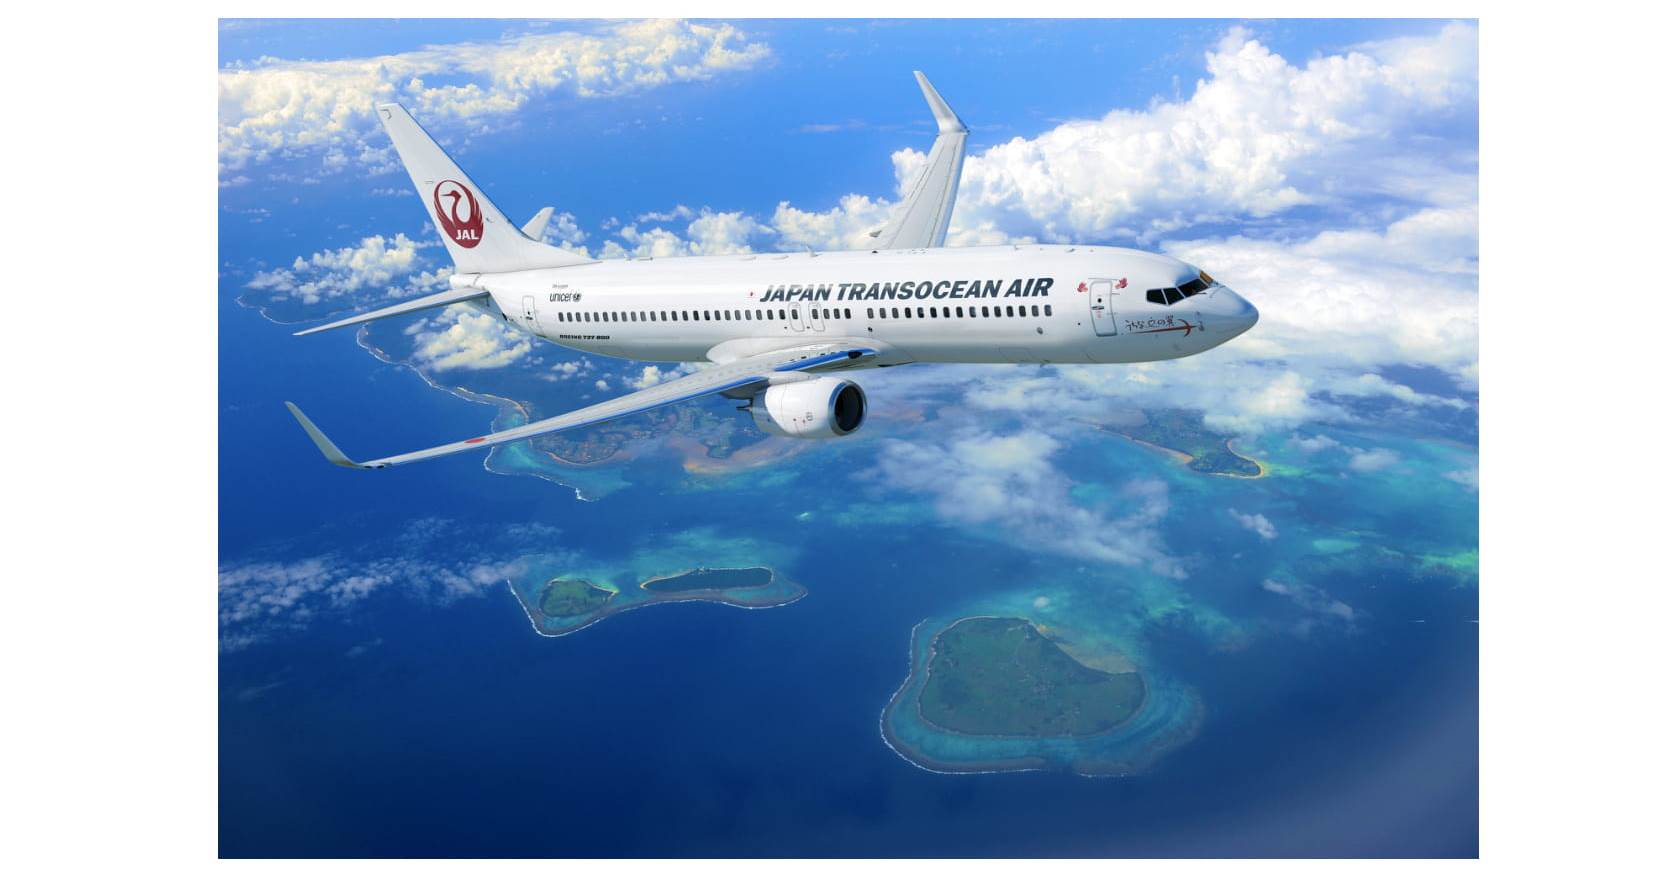 JTA 航空機追加導入について | JTA日本トランスオーシャン航空